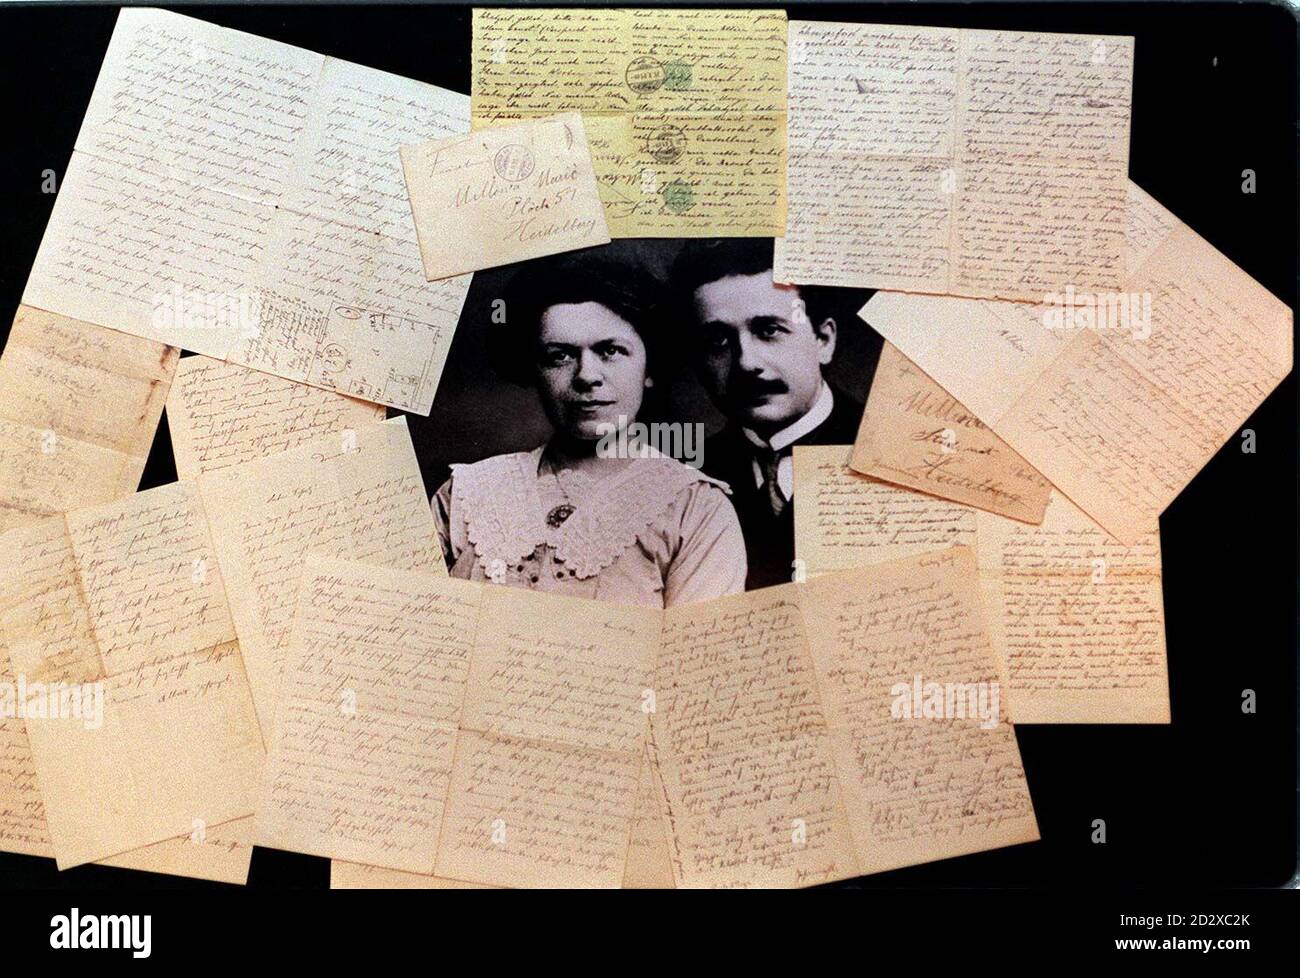 La correspondance de la famille Einstein, y compris les lettres d'amour Albert Einstein-Mileva Marie, entoure un portrait du couple, avant d'aller sous le marteau à Christie's à New York le 25 novembre 1996. Photo de David Cheskin. Banque D'Images